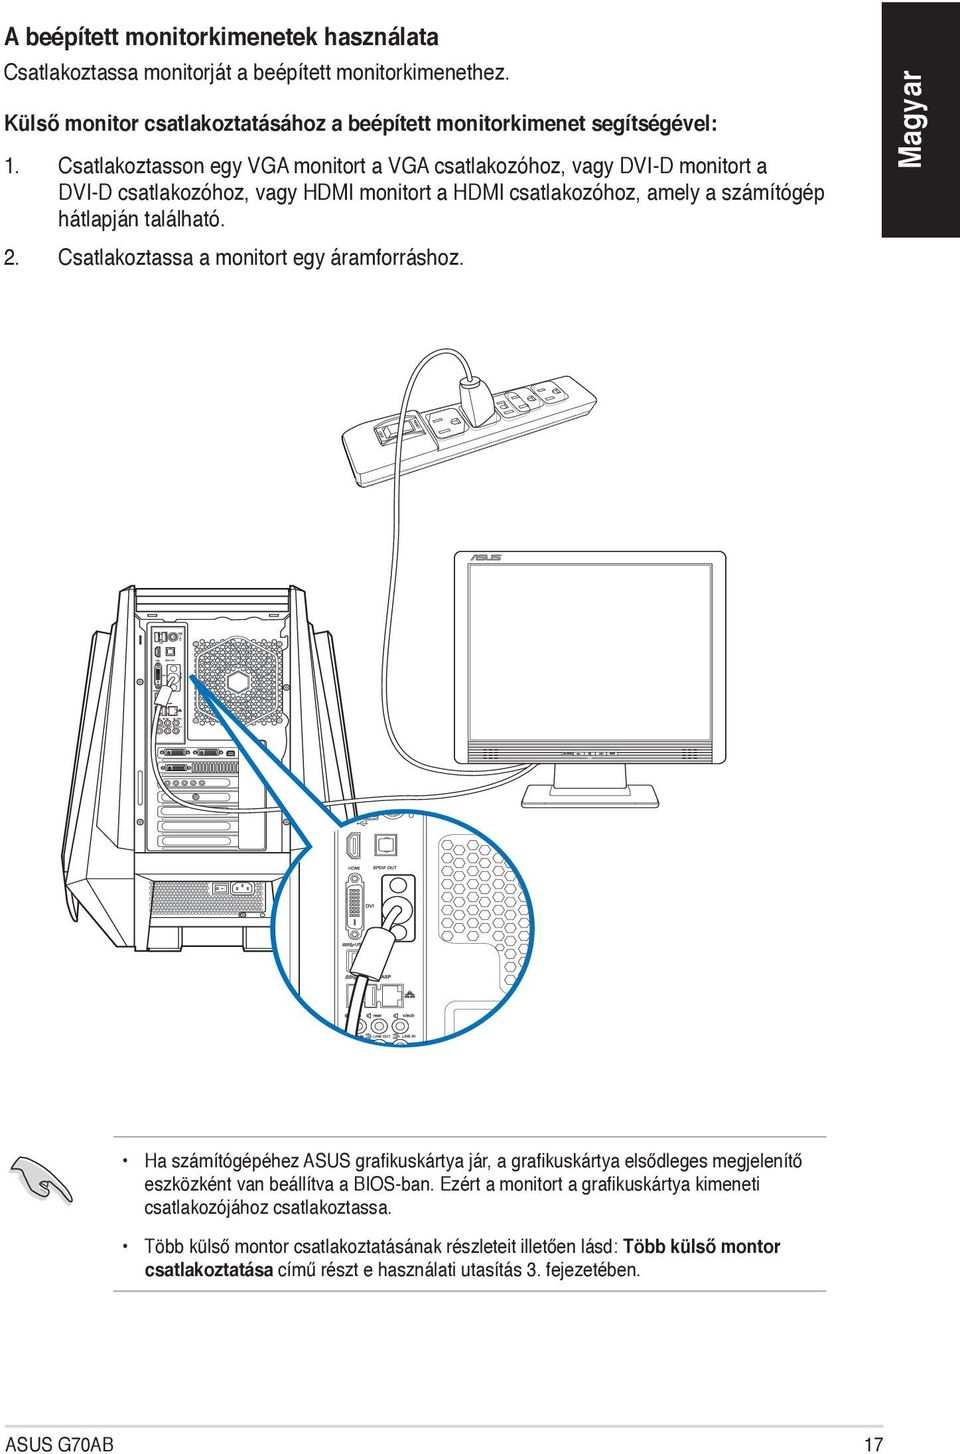 Csatlakoztassa a monitort egy áramforráshoz. Ha számítógépéhez ASUS grafikuskártya jár, a grafikuskártya elsődleges megjelenítő eszközként van beállítva a BIOS-ban.